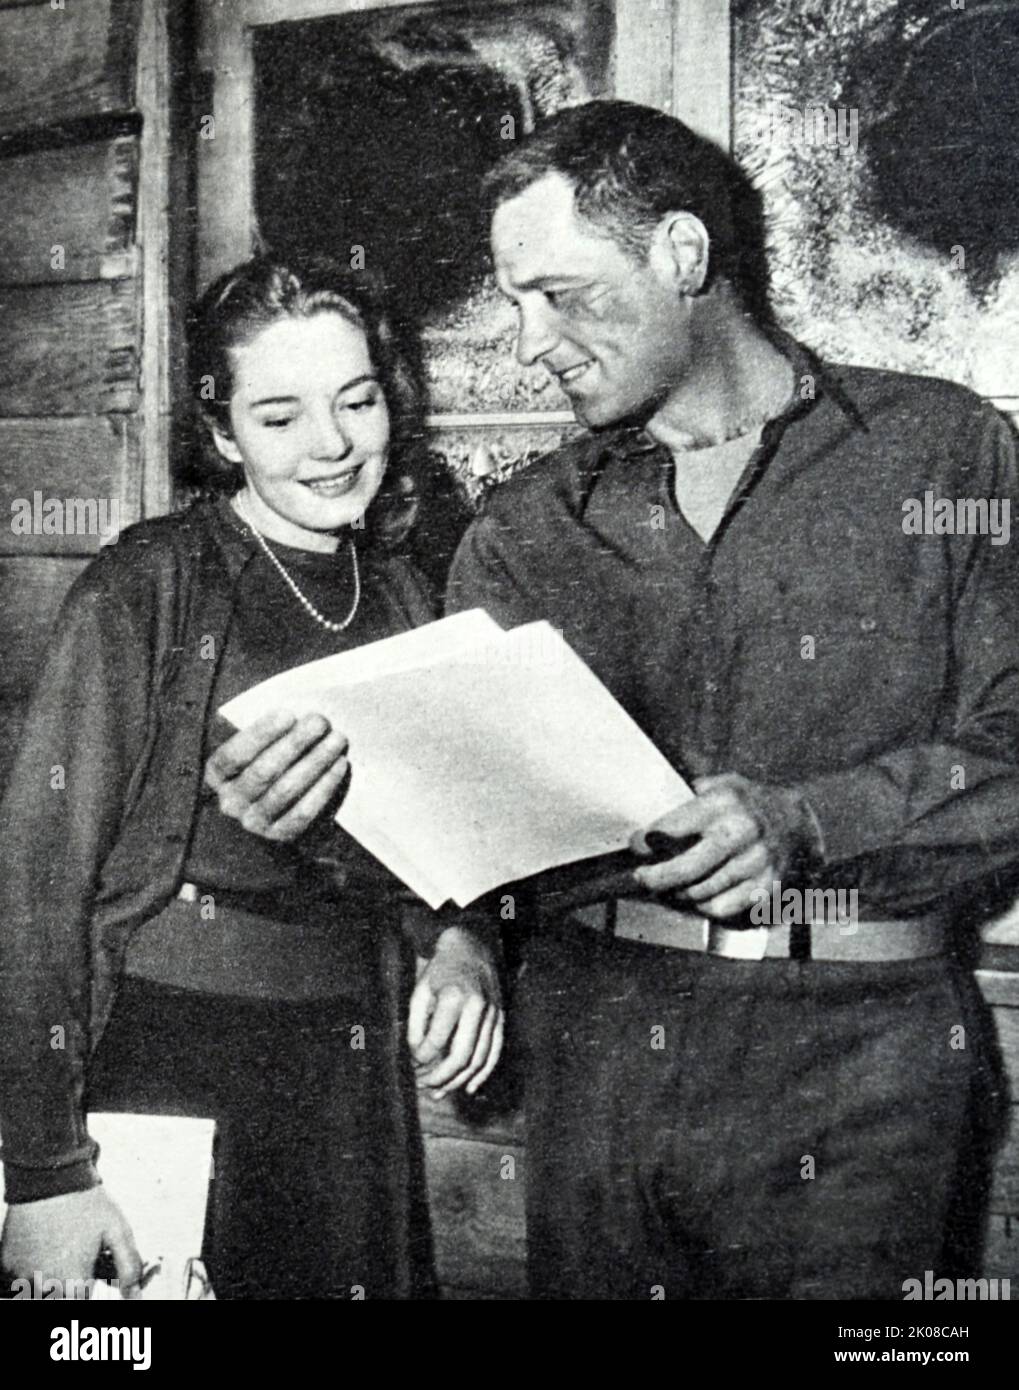 Billy Wilder e Suzanne Cloutier sul set di Stalag 17 è un film di guerra americano del 1953. Billy Wilder (Samuel Wilder, 22 giugno 1906 – 27 marzo 2002) è stato un regista, produttore e sceneggiatore austriaco-americano. Suzanne Cloutier (10 luglio 1923 – 2 dicembre 2003) è stata una Foto Stock